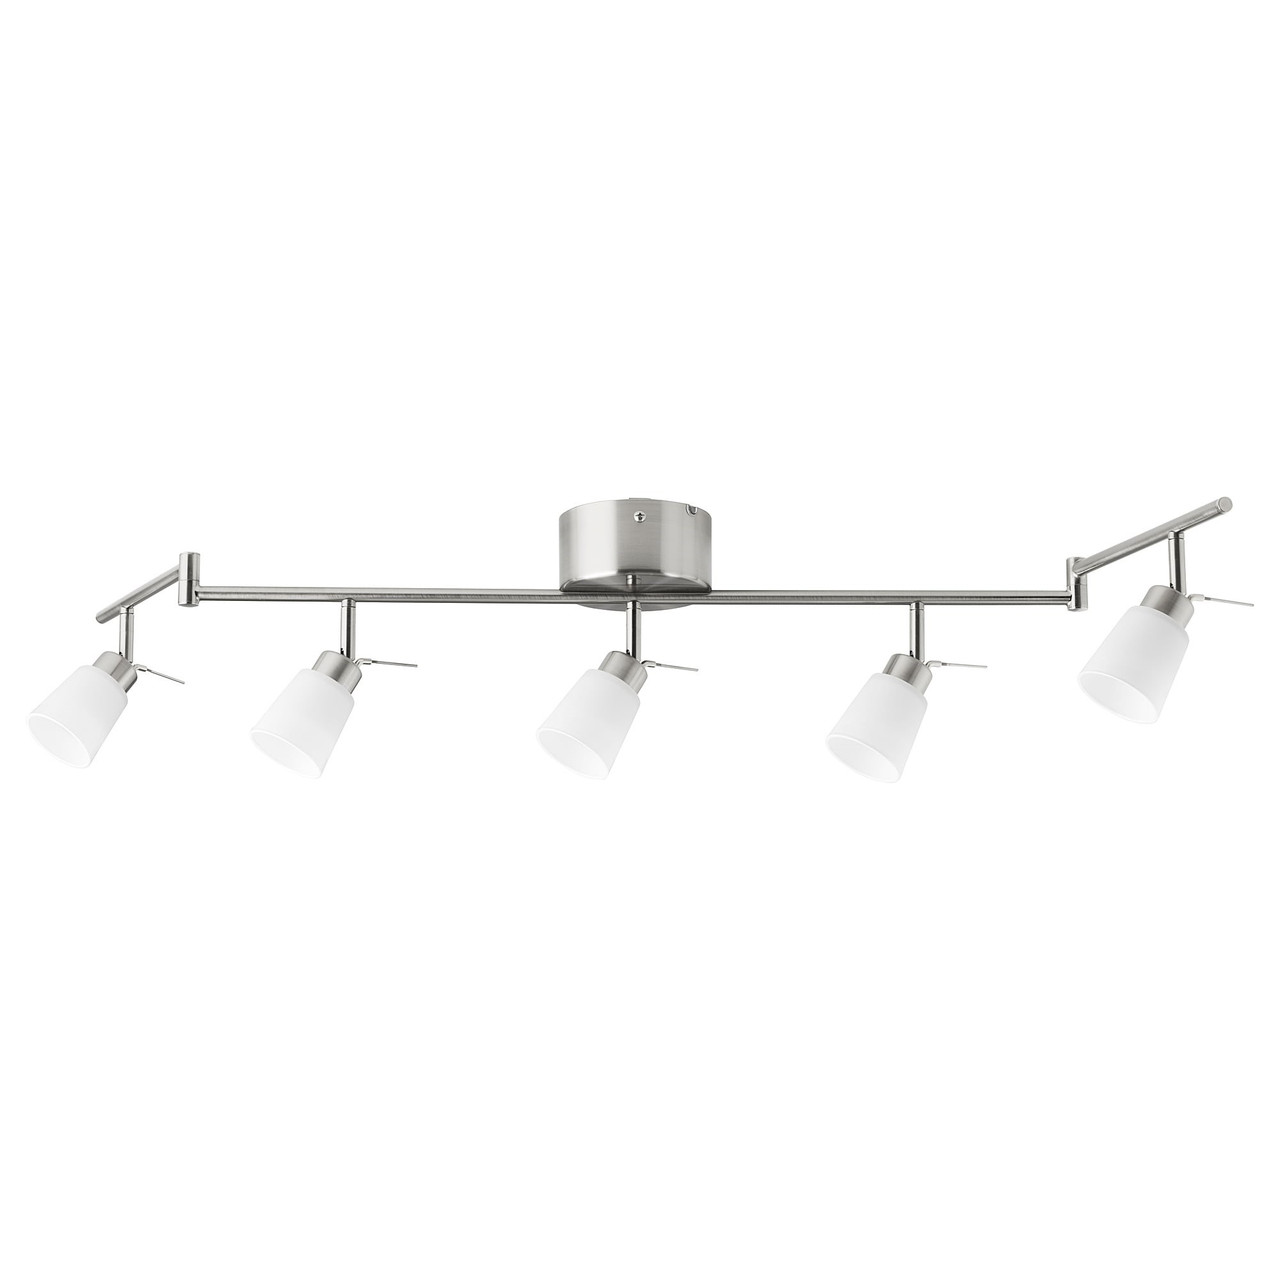 Светильник потолочный ТИДИГ 5 ламп, никелированный ИКЕА, IKEA